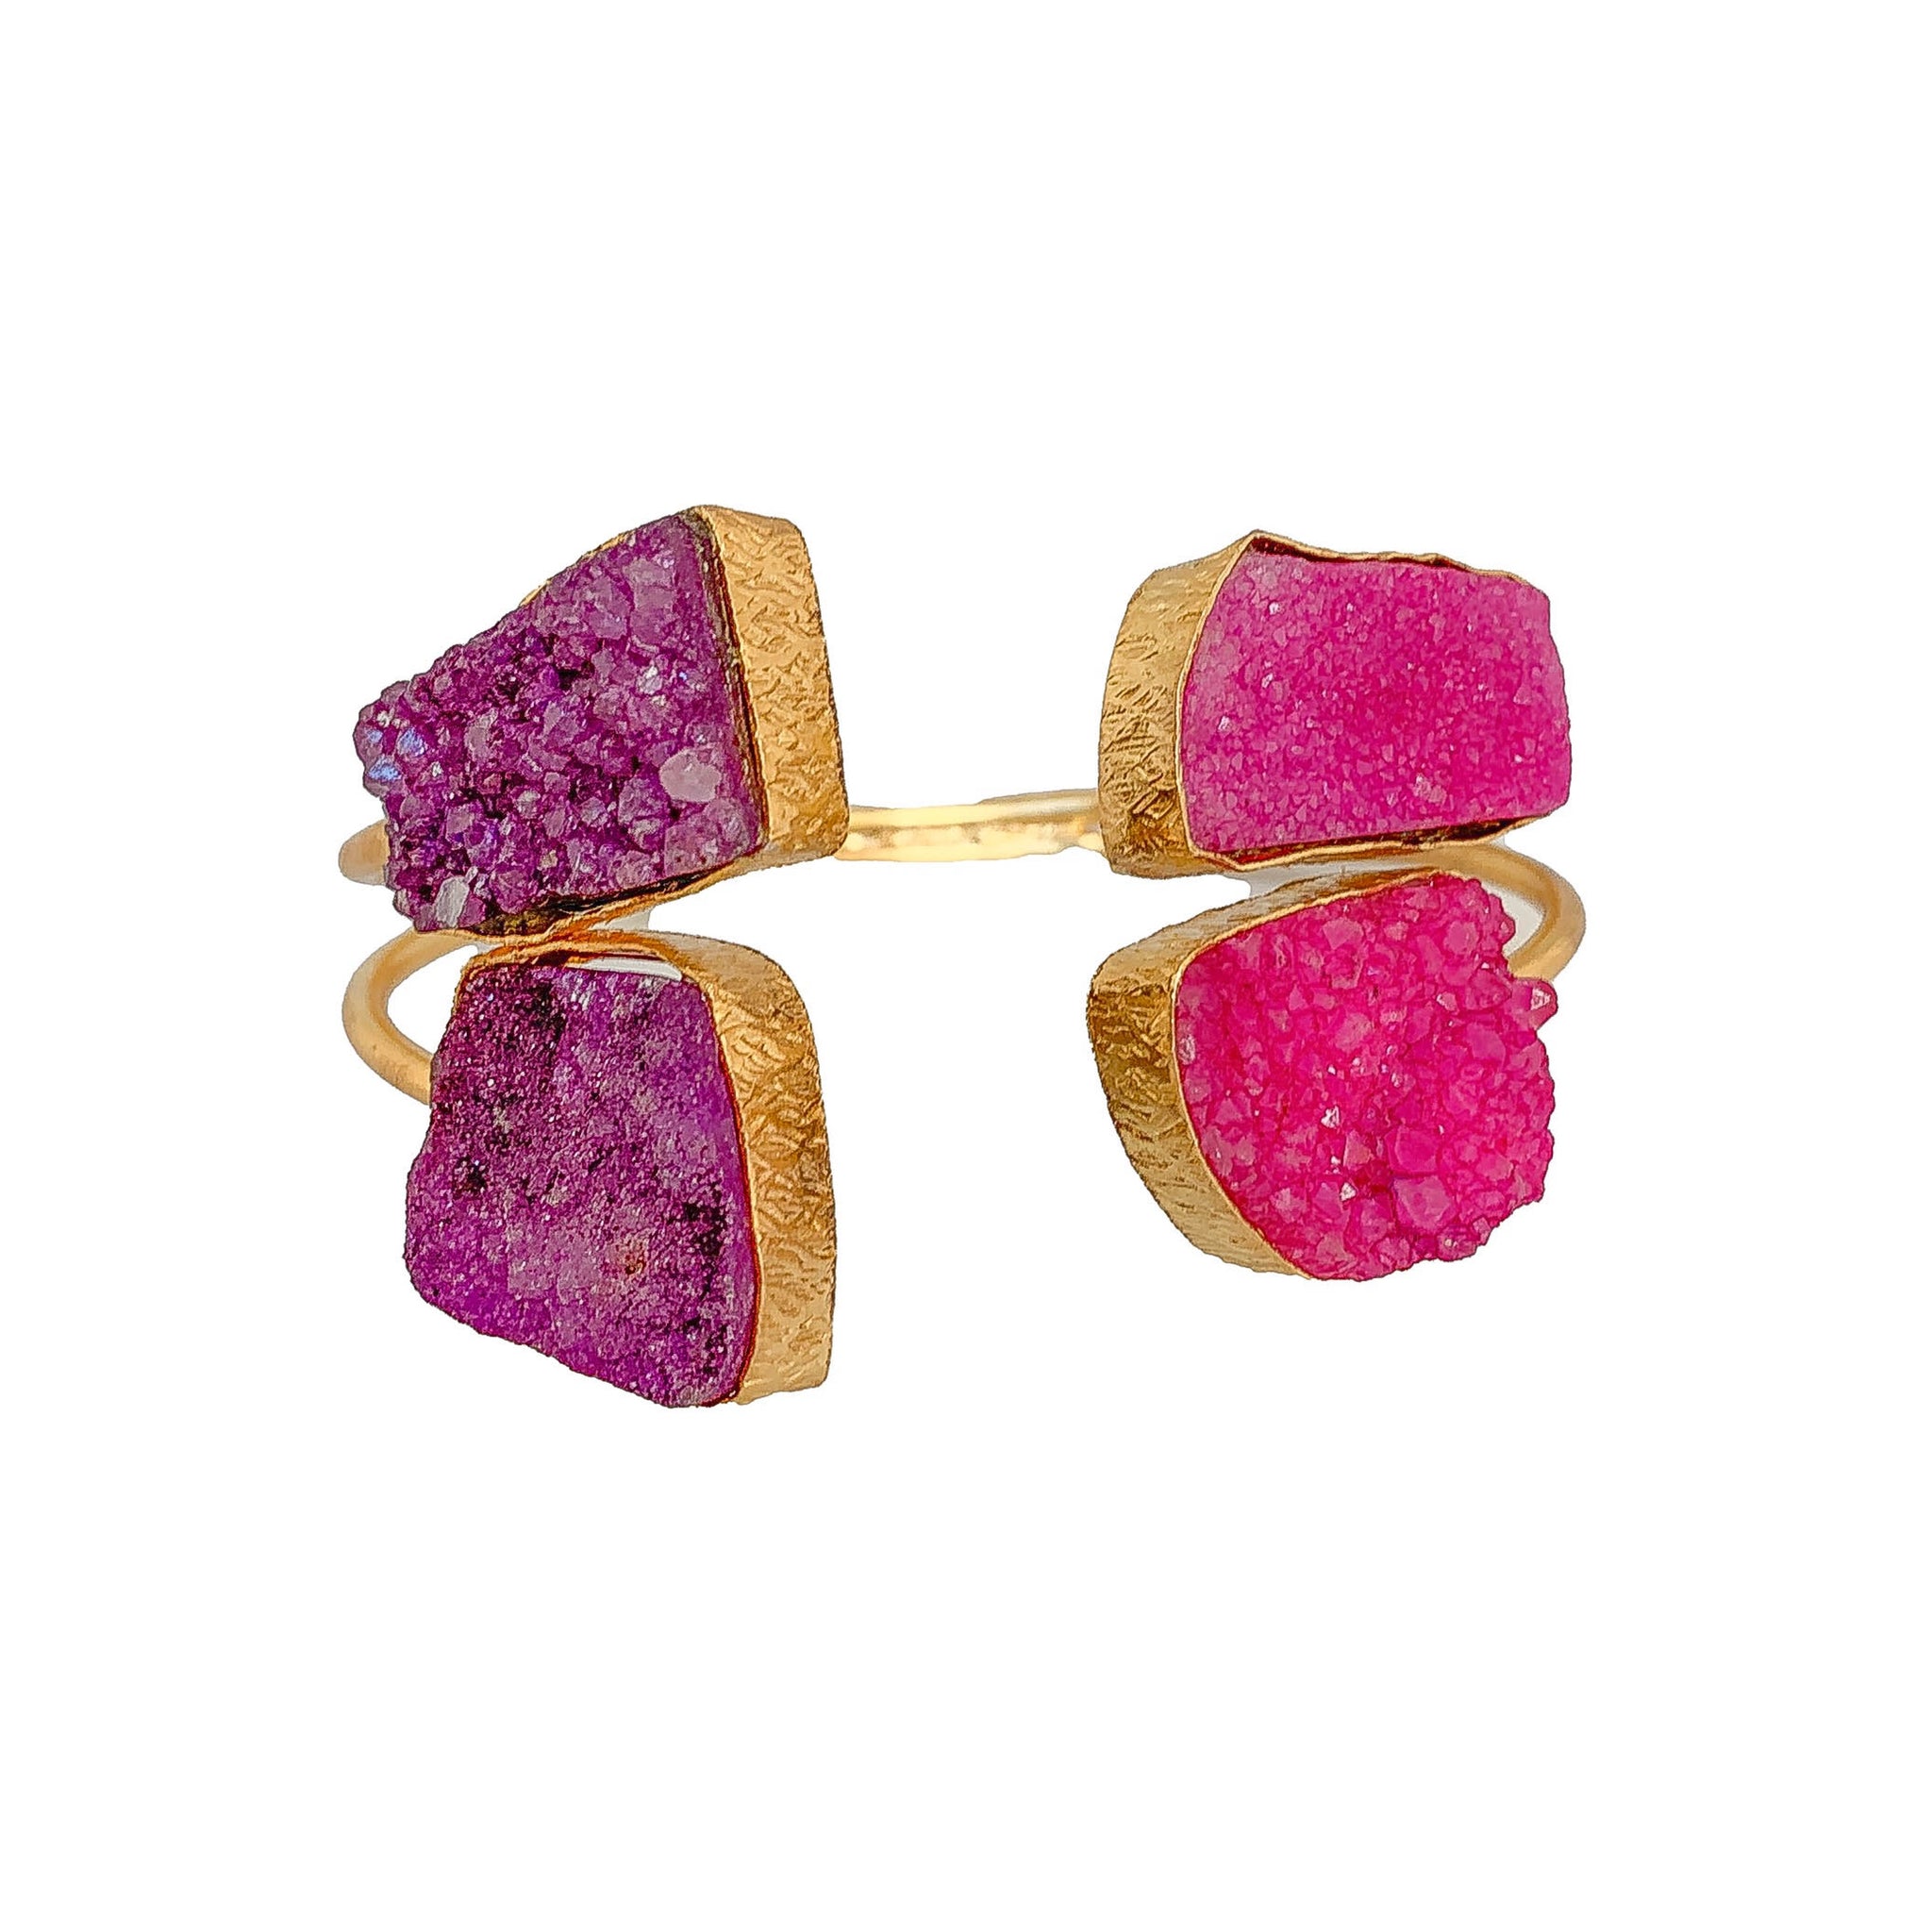 raw stone bracelets | gemstone bracelets | gold bracelets for women by Tanya Litkovska